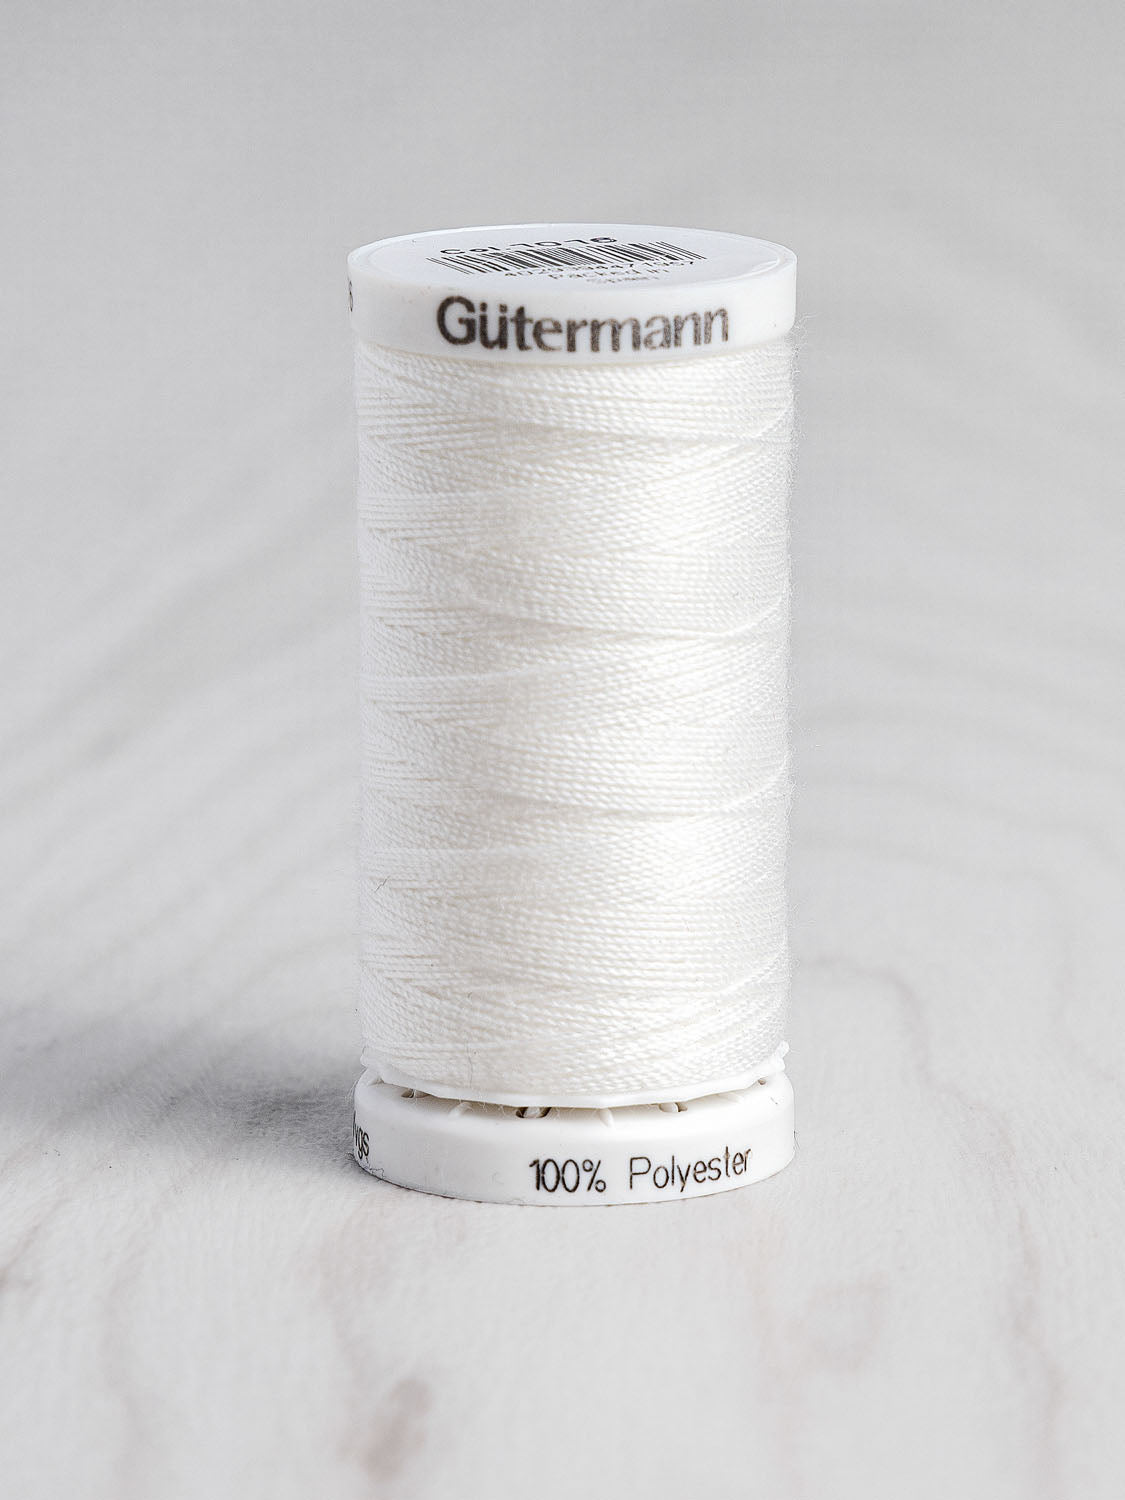 Gutermann Sew All Thread 110yd English.